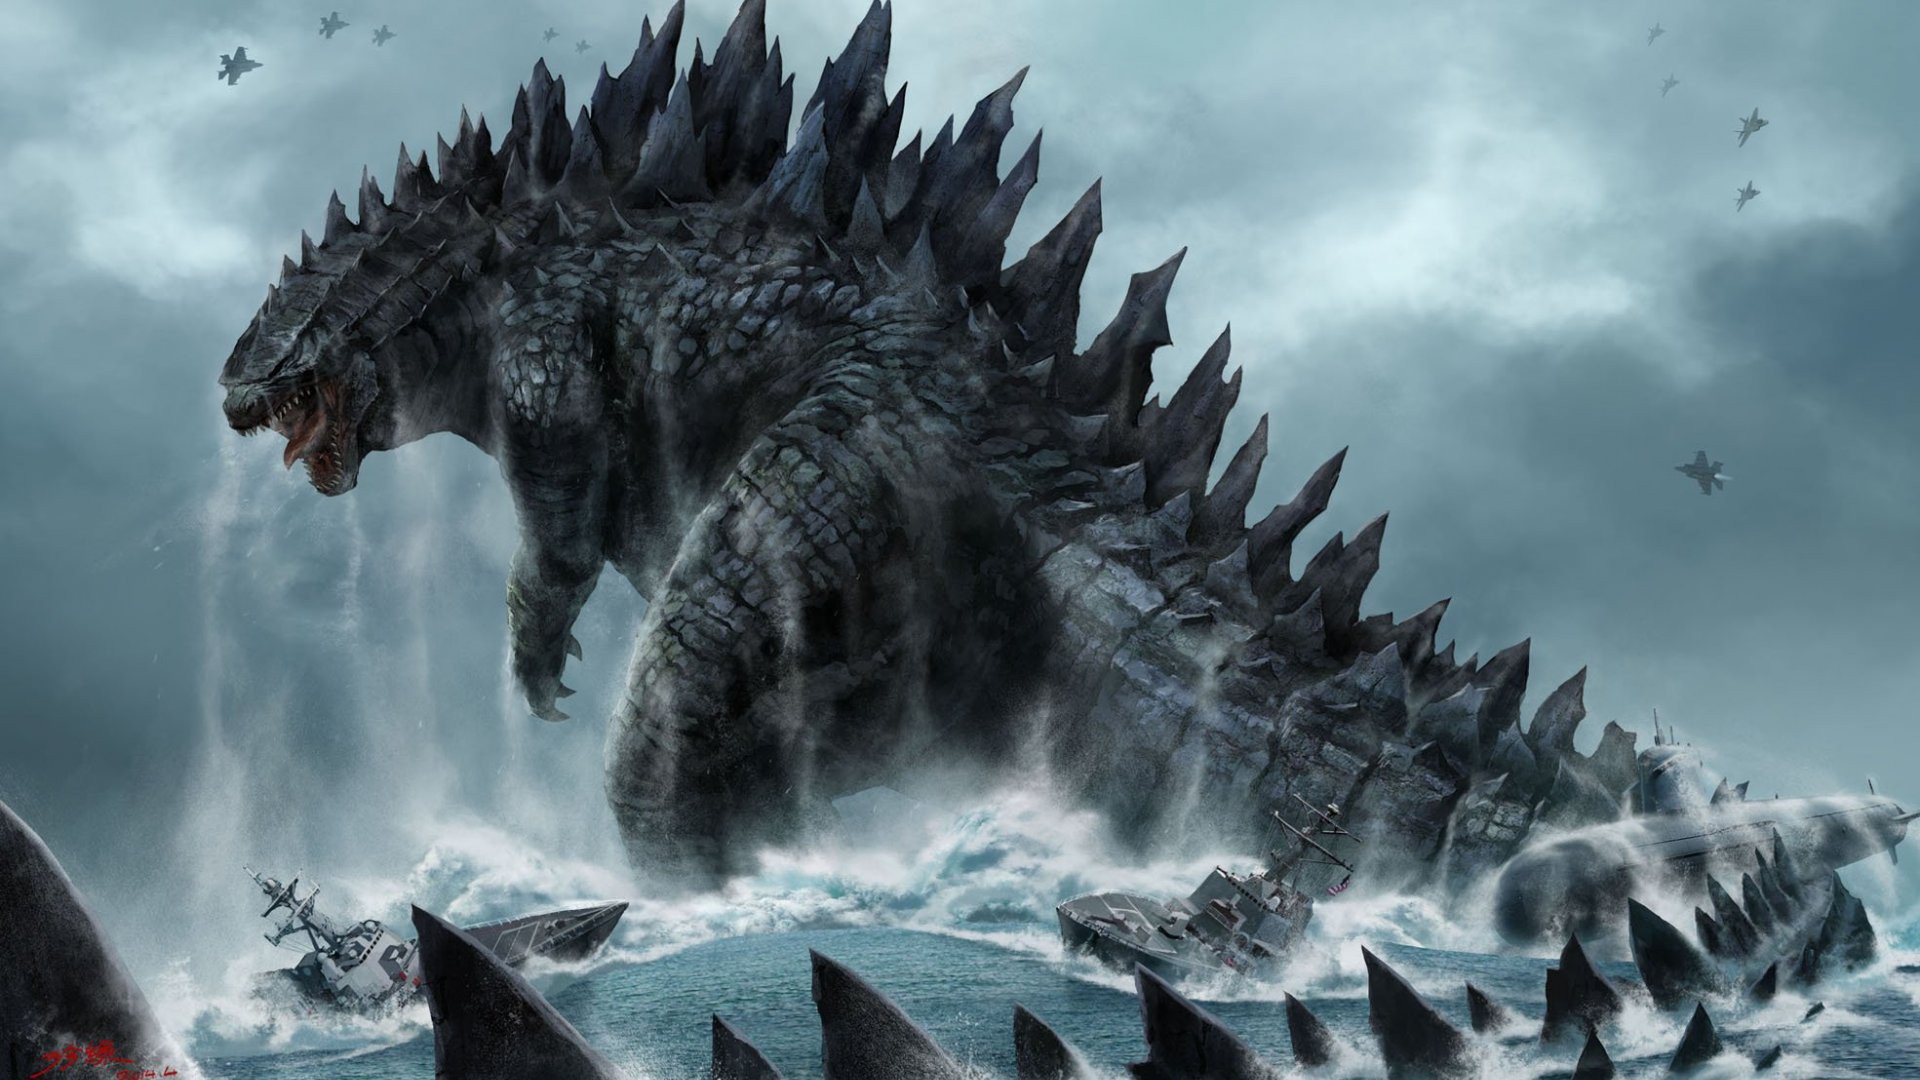 Chuyện chưa kể Godzilla: Khám phá những bí mật của siêu quái vật huyền thoại Godzilla với Chuyện chưa kể Godzilla. Bạn sẽ được tiếp cận với những hình ảnh và câu chuyện chưa từng được tiết lộ trước đây. Hãy cùng xem chuyện chưa kể của Godzilla để có thêm hiểu biết về loài quái vật này.